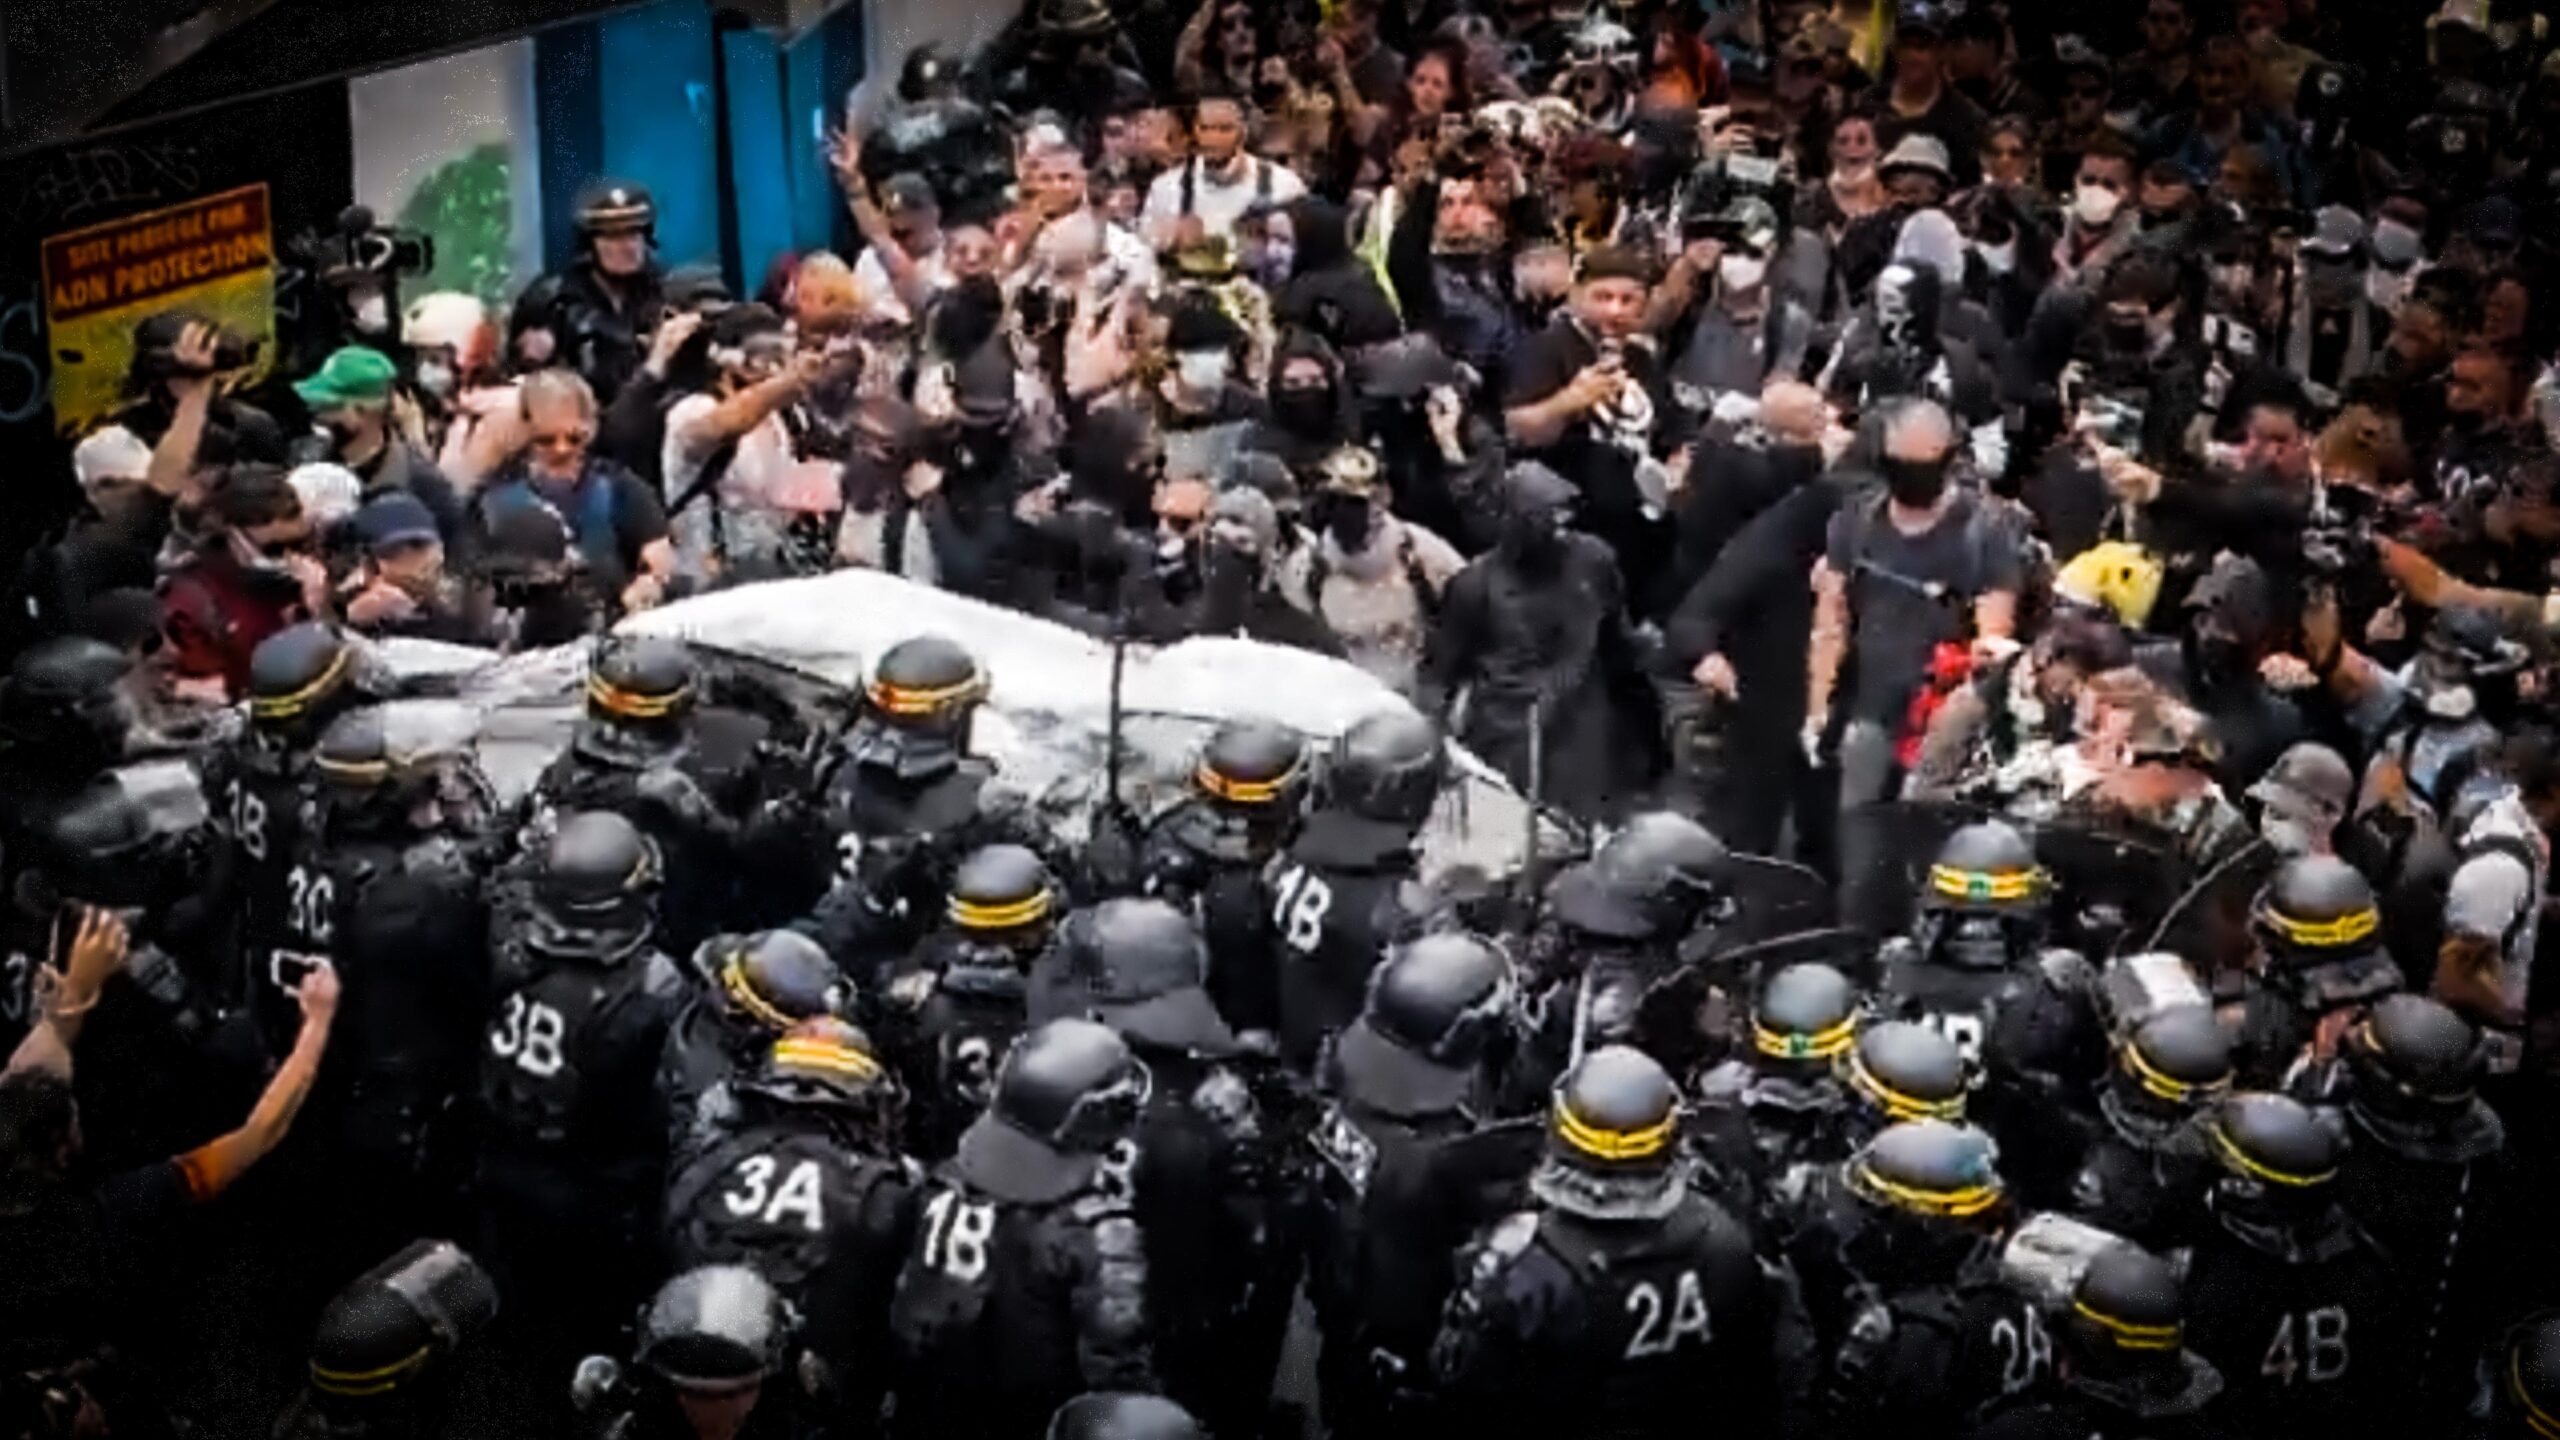 Scontri con la polizia alle manifestazioni di Parigi: le immagini